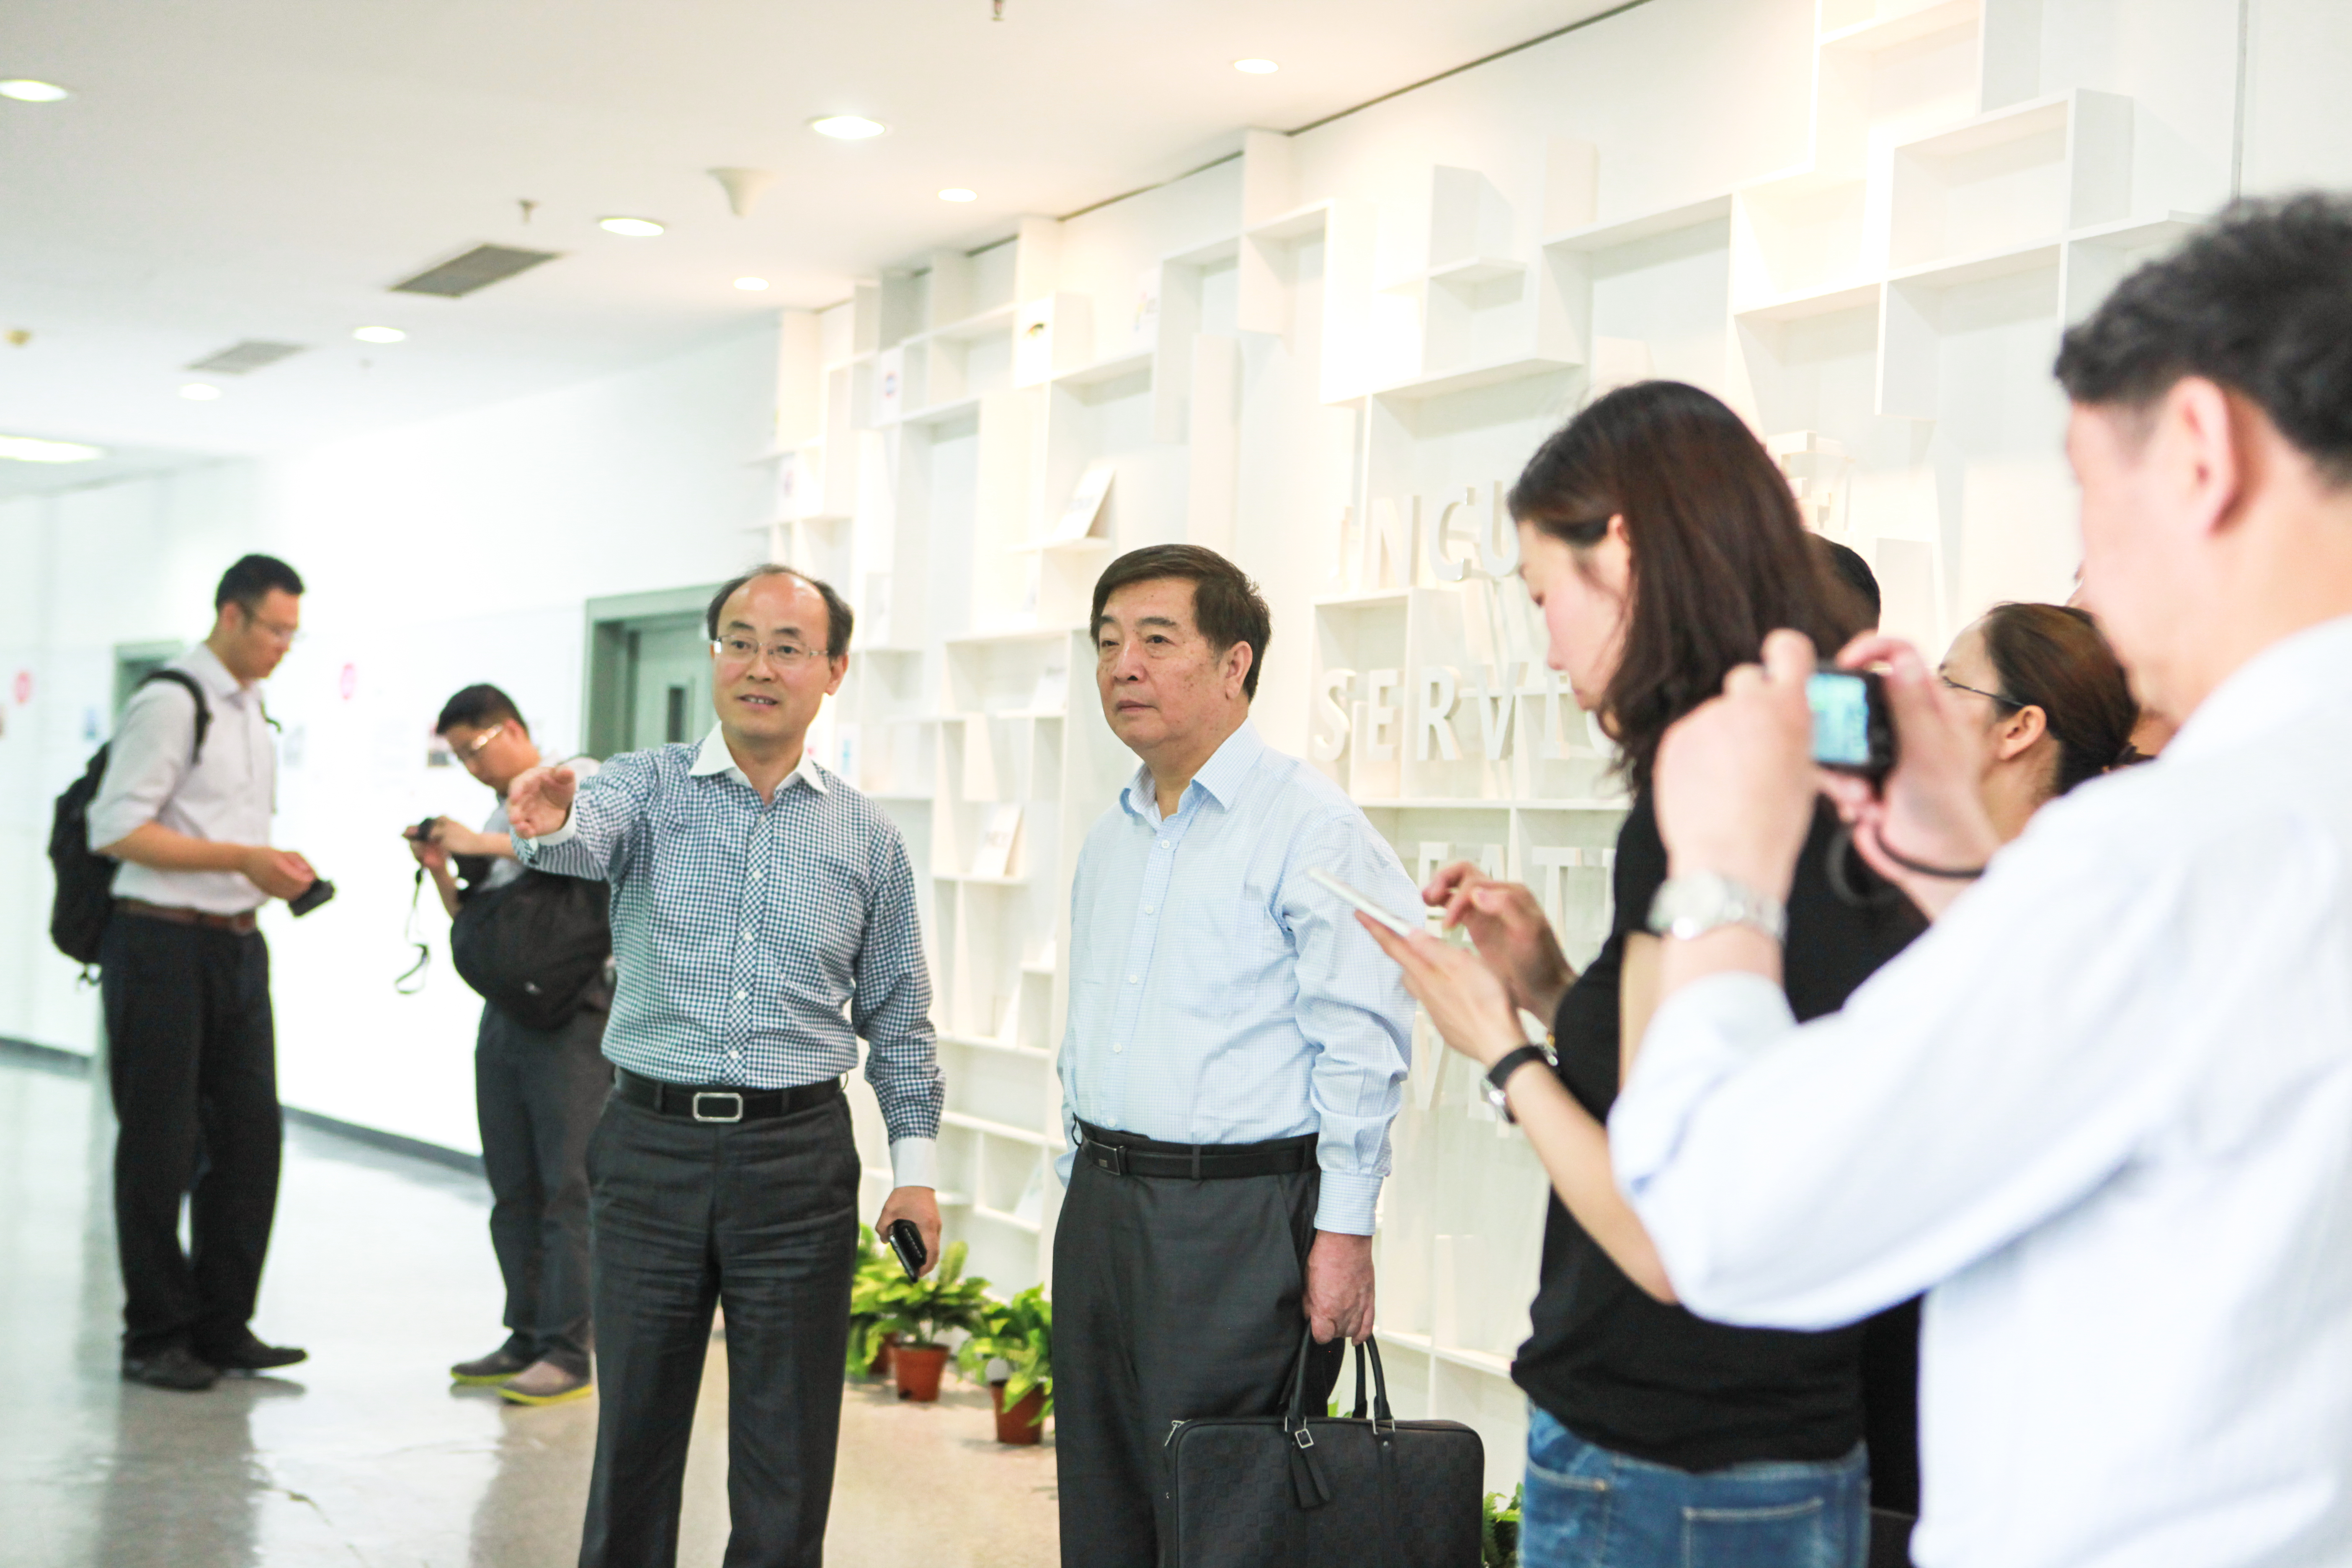 1温涛校长陪同来访嘉宾参观大学生创业中心（SOVO）